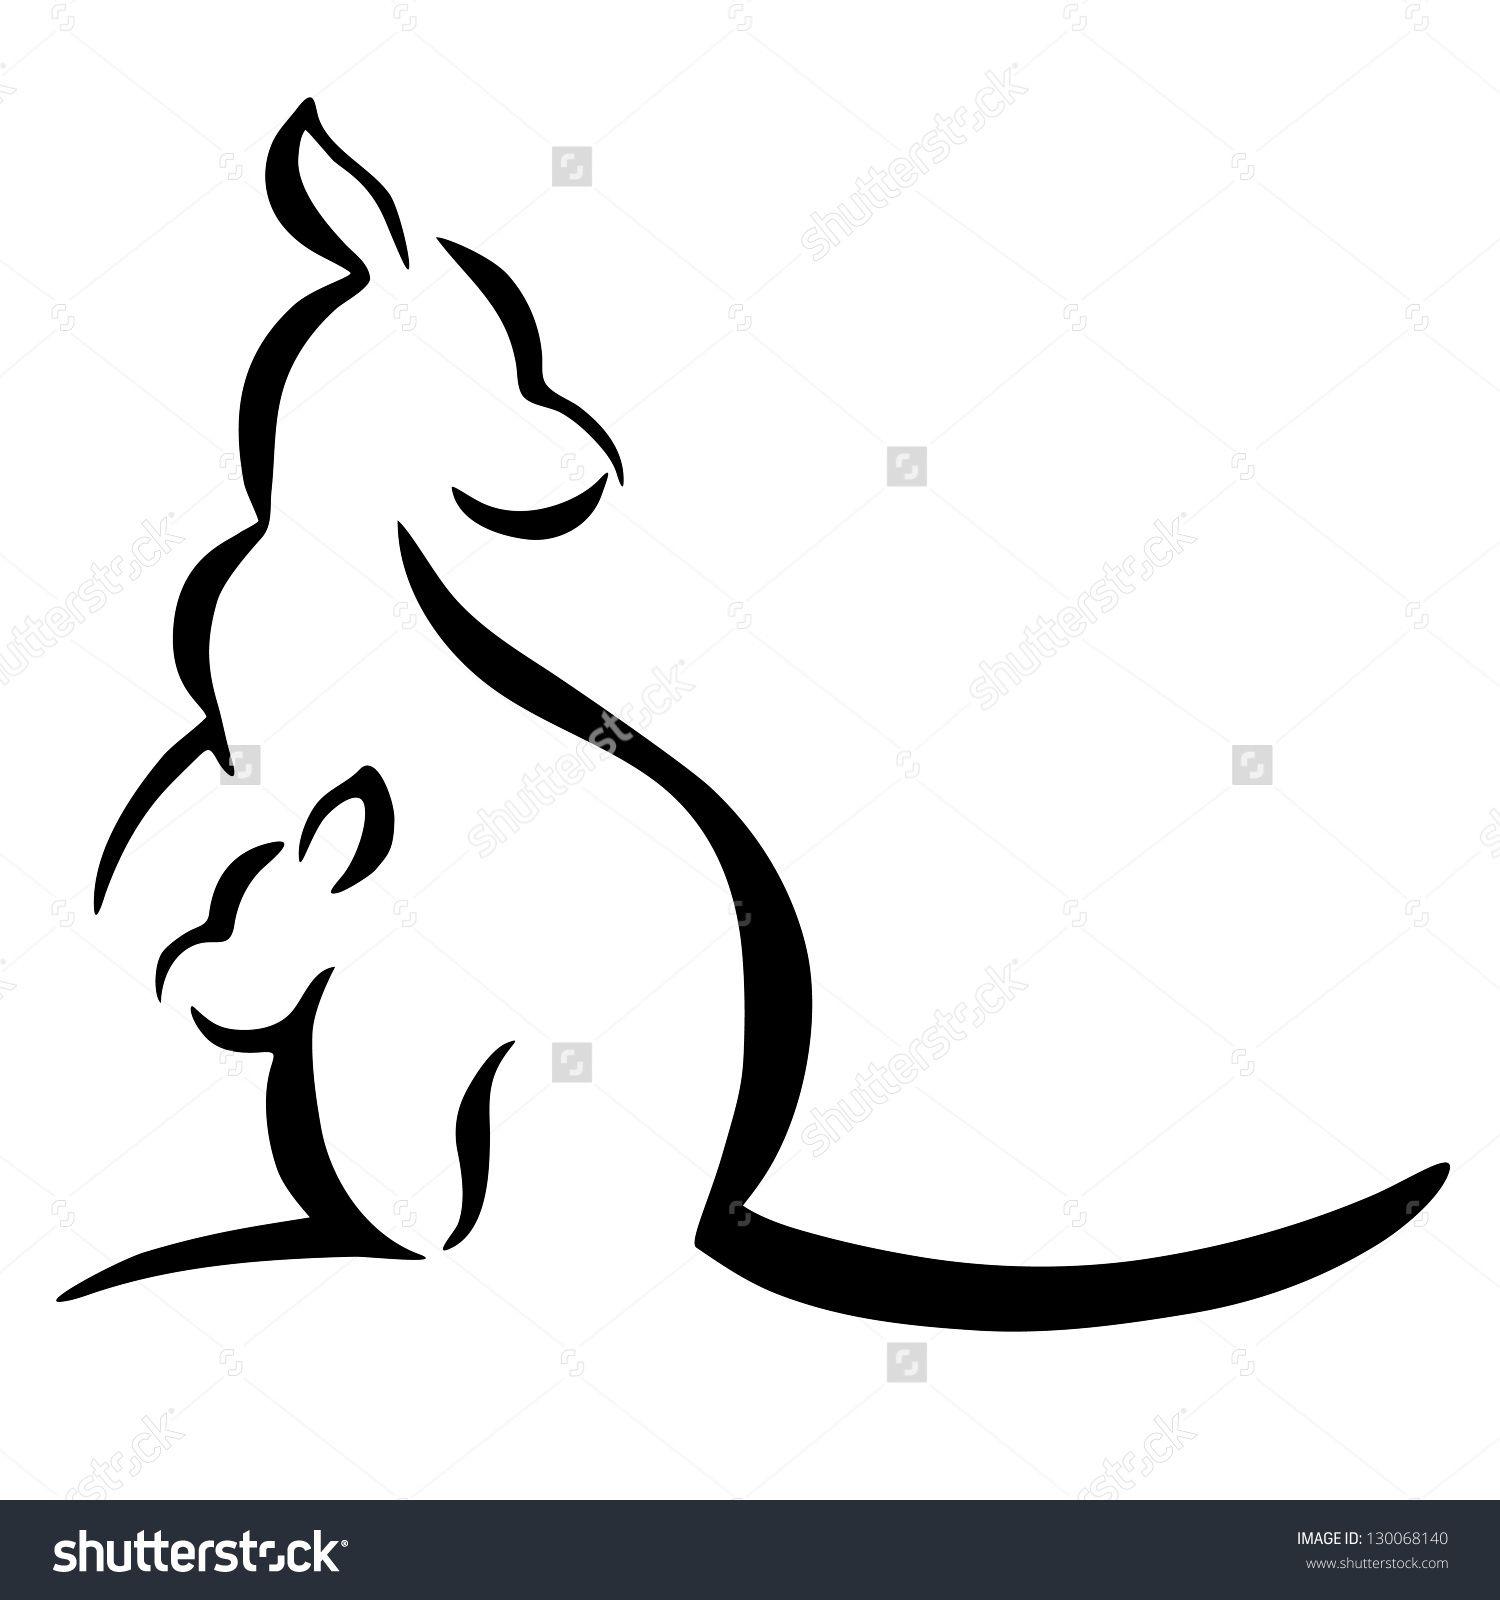 White Kangaroo Logo - Kangaroo silhouette on a white background. Abstract design logo